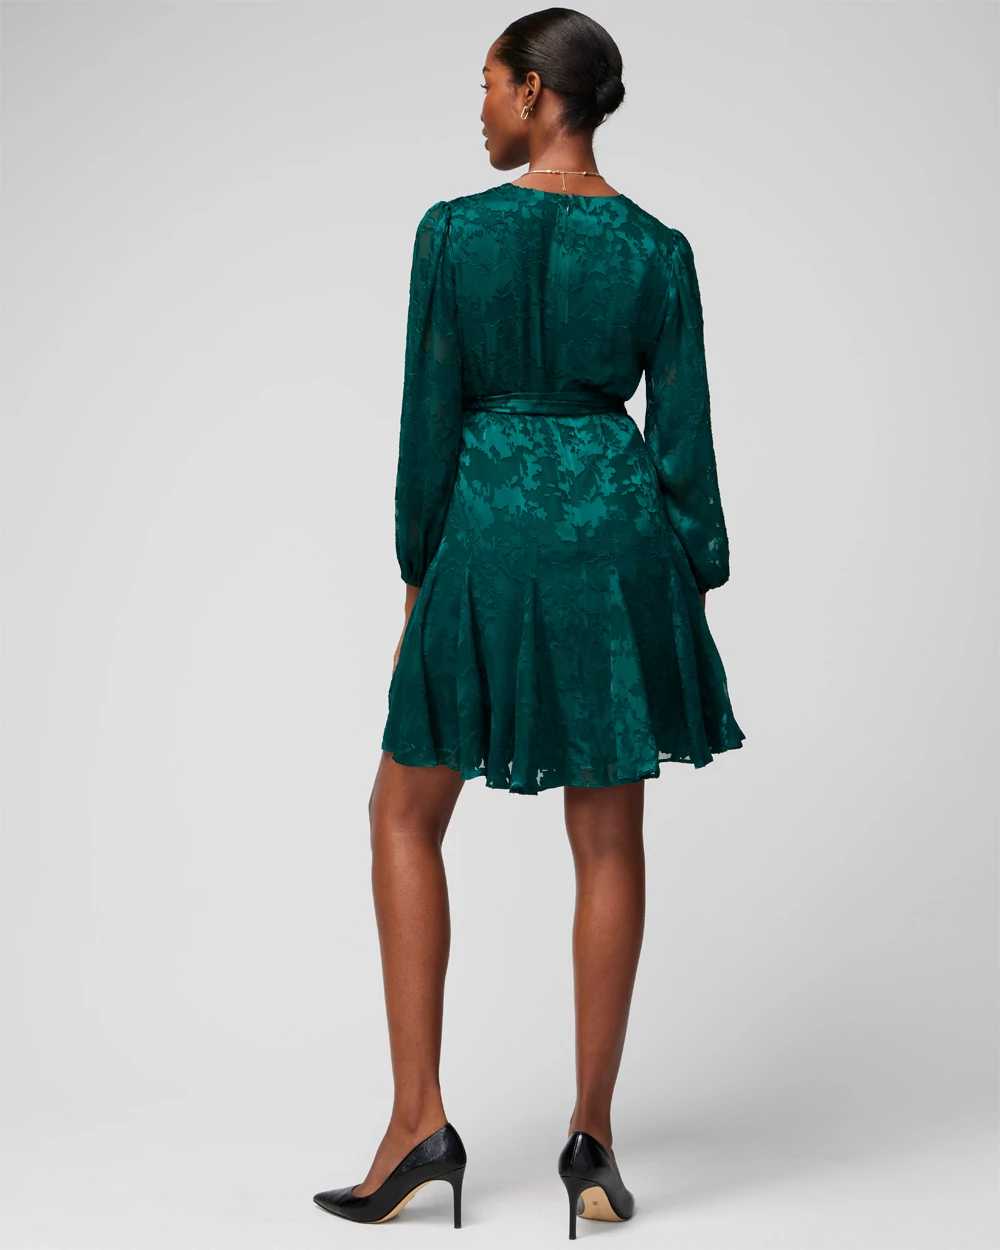 Long Sleeve Burnout V-Neck Godet Dress click to view larger image.